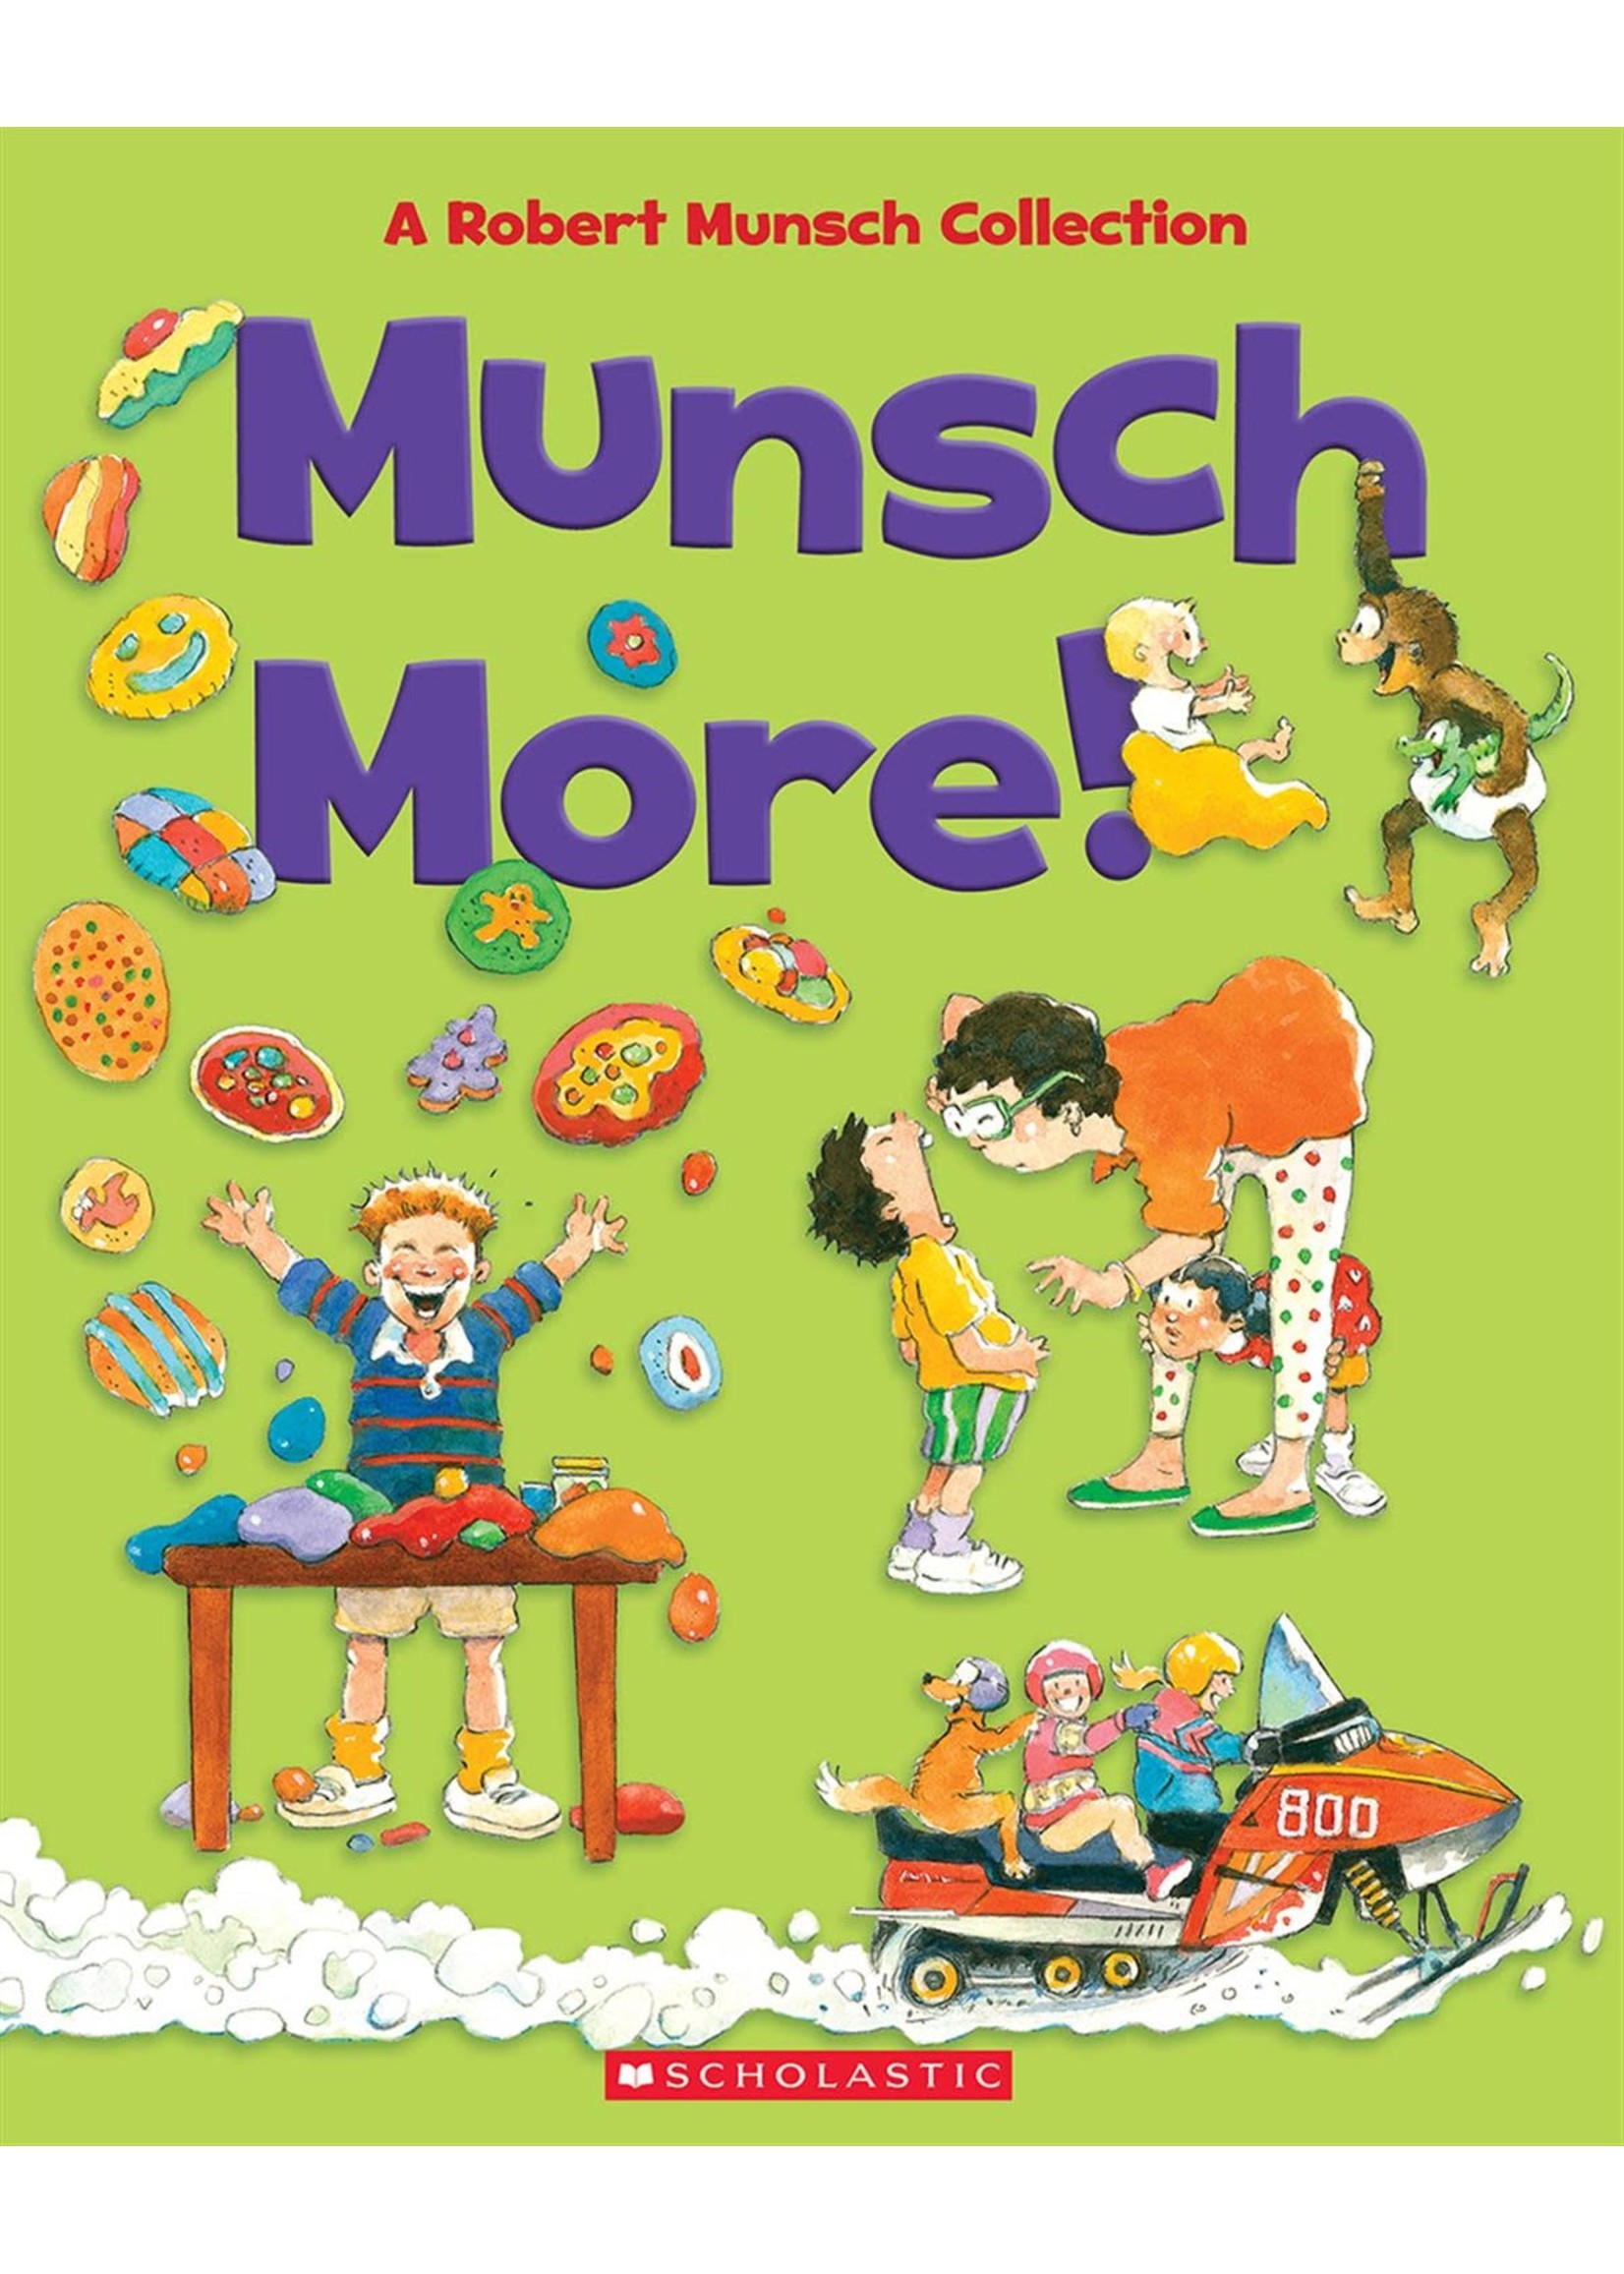 Munsch More! A Robert Munsch Collection by Robert Munsch, Michael Martchenko